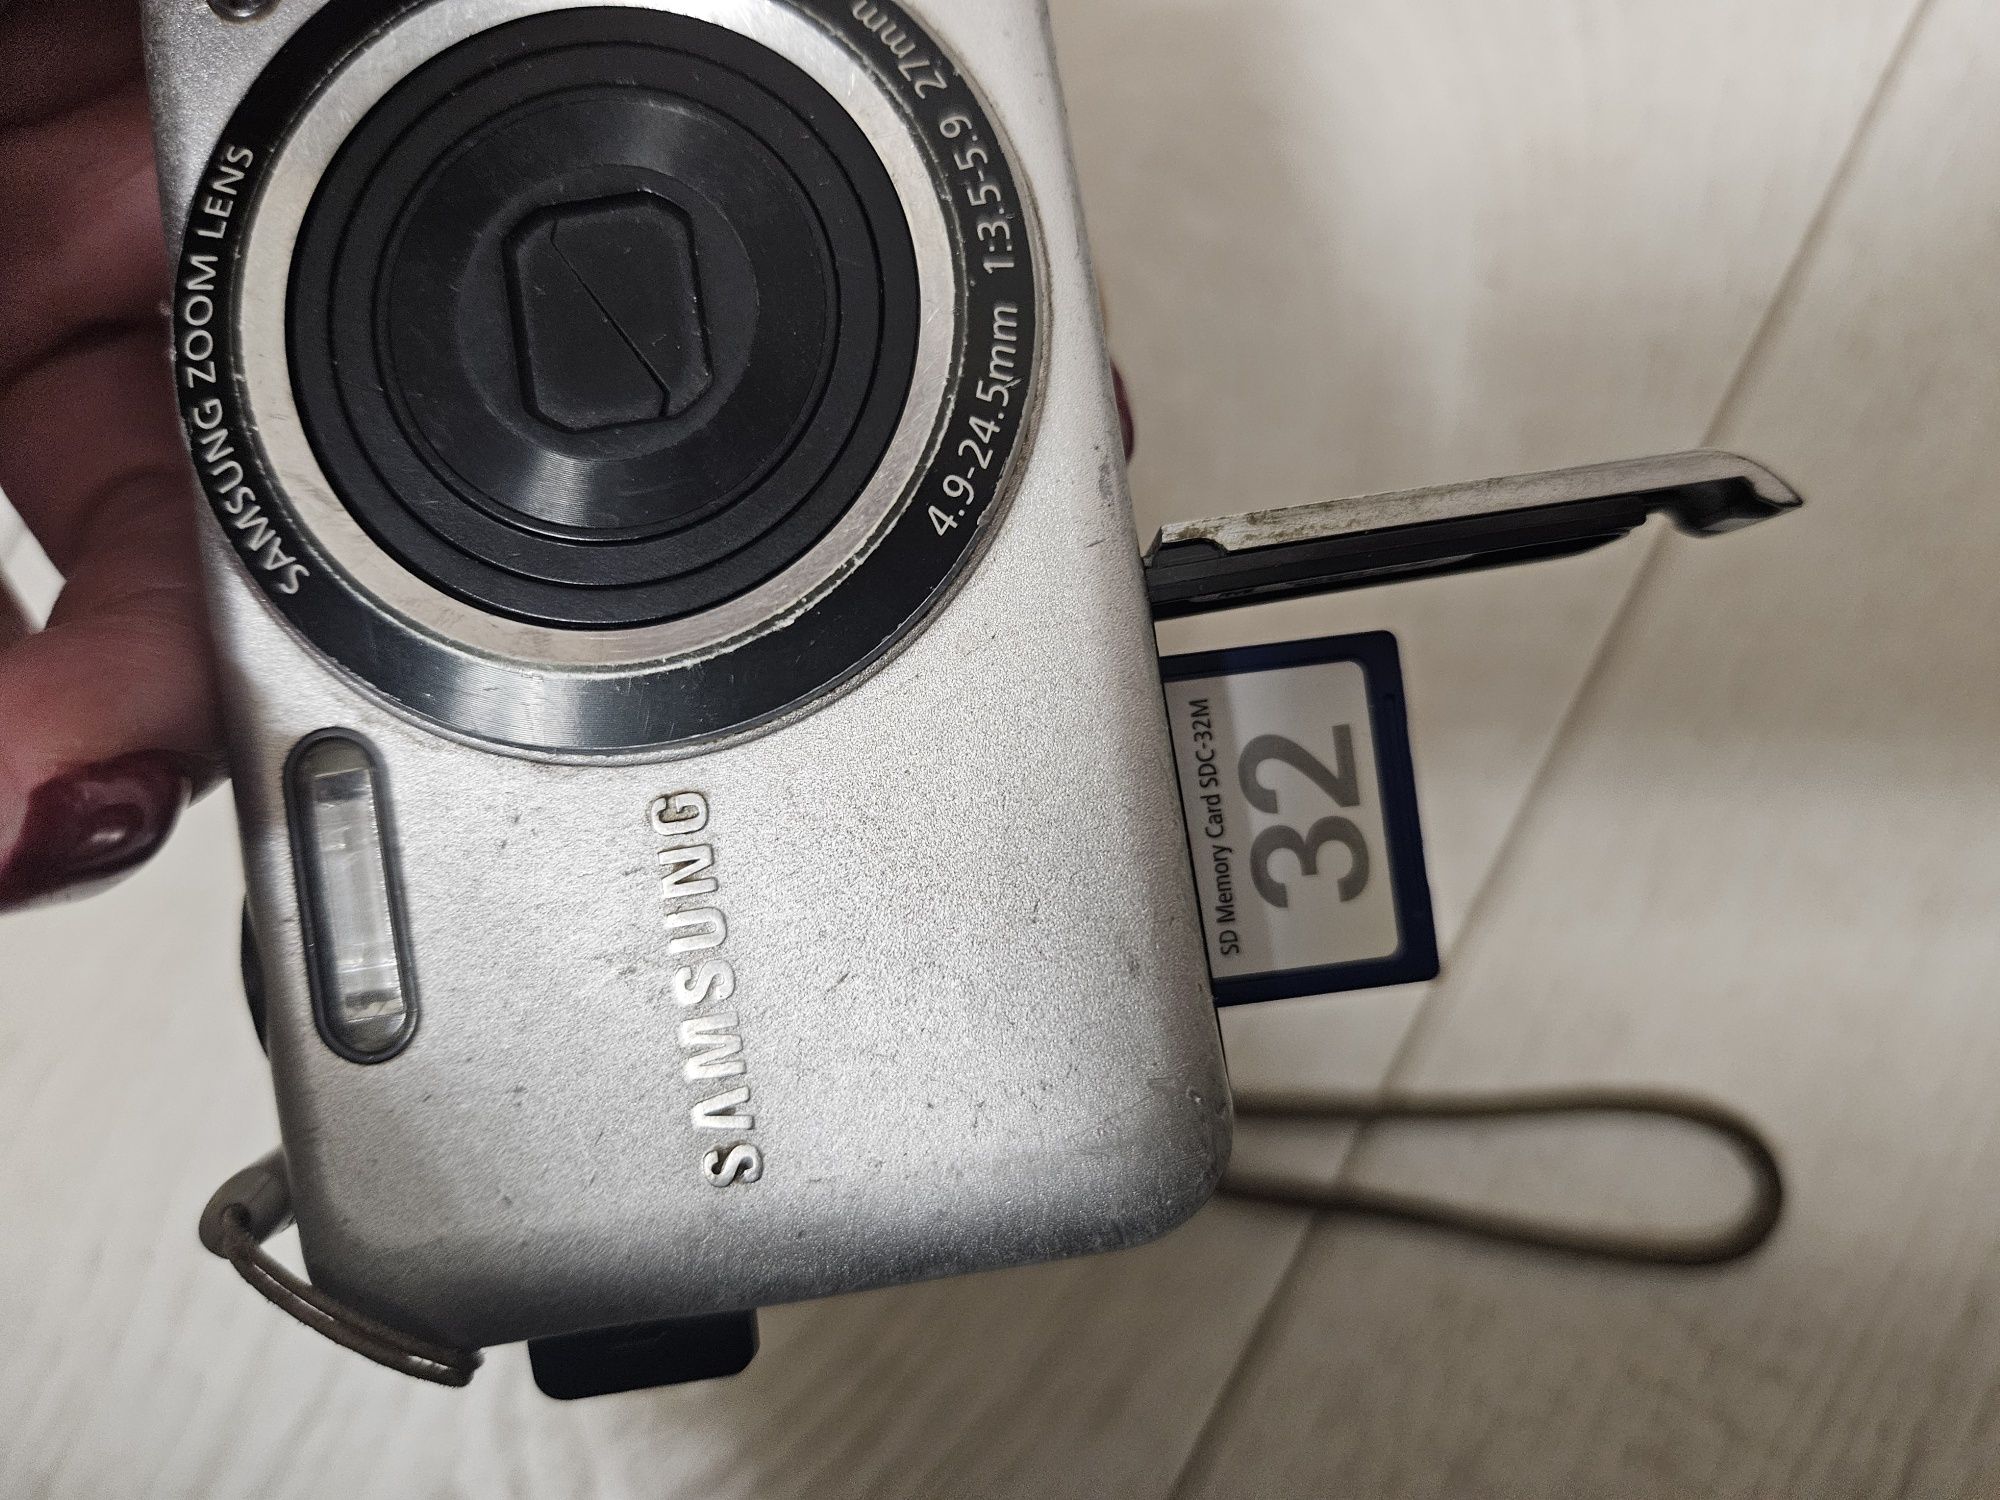 Samsung ES73 Самсунг фотоаппарат